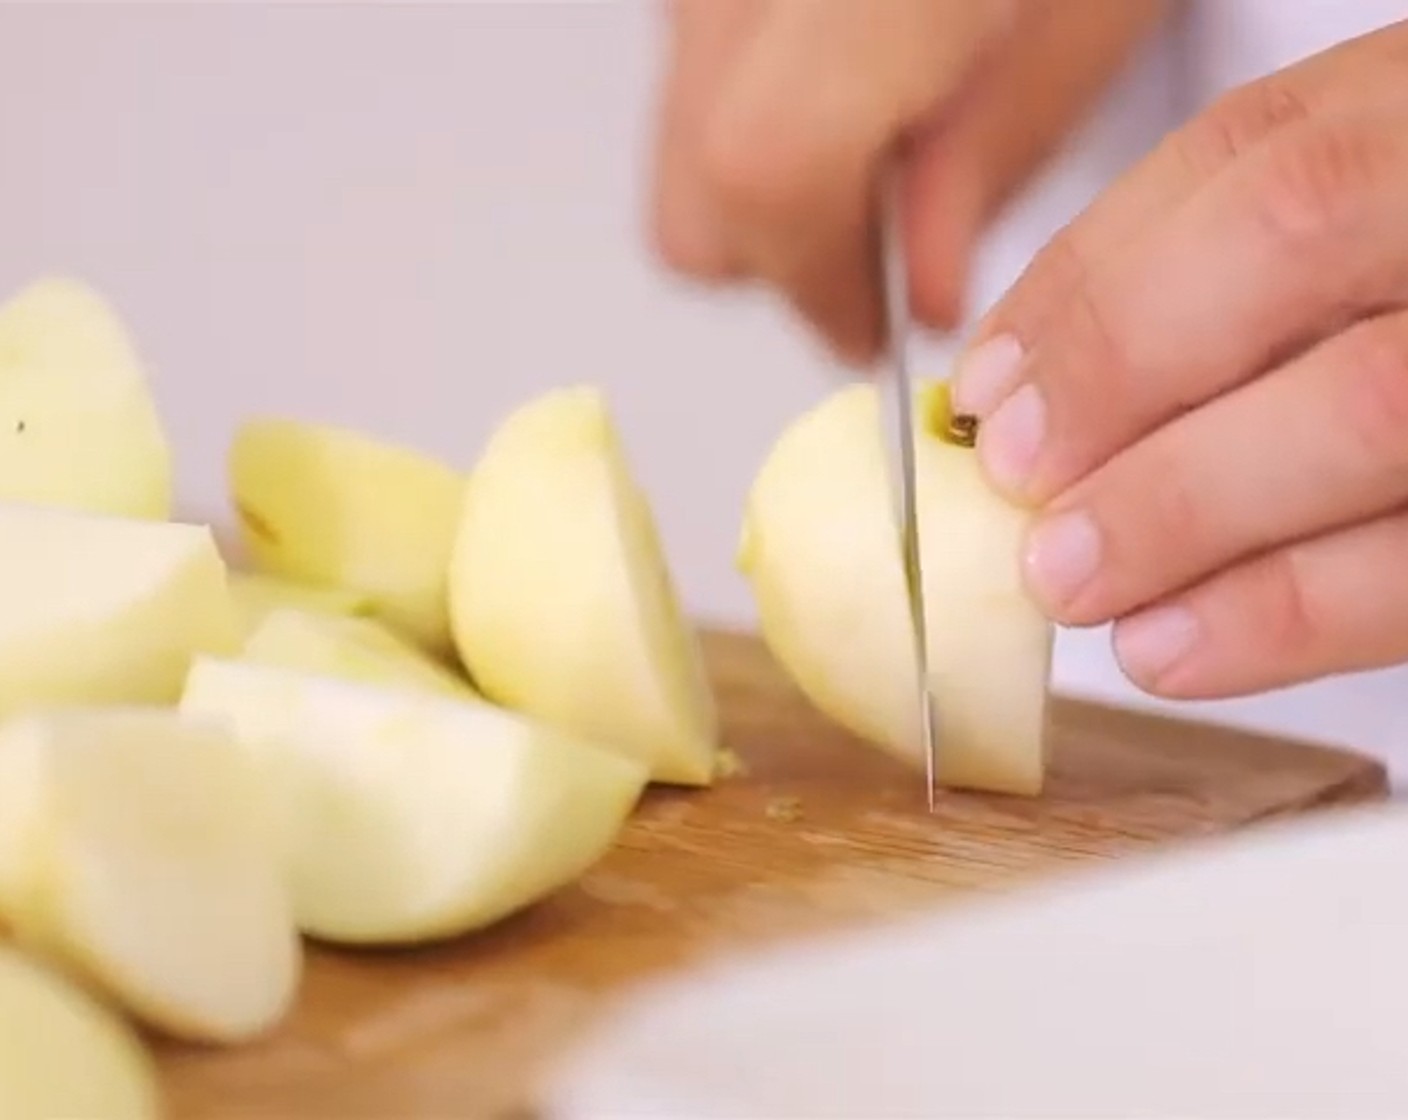 Schritt 1 Die Äpfel (800 g) schälen, entkernen und würfeln. Die Porzellanform mit der Butter (nach Bedarf) einfetten. Als nächstes die gewürfelten Äpfel zusammen mit dem Wasser (10 Teelöffel) in die Form geben und gleichmässig verteilen.